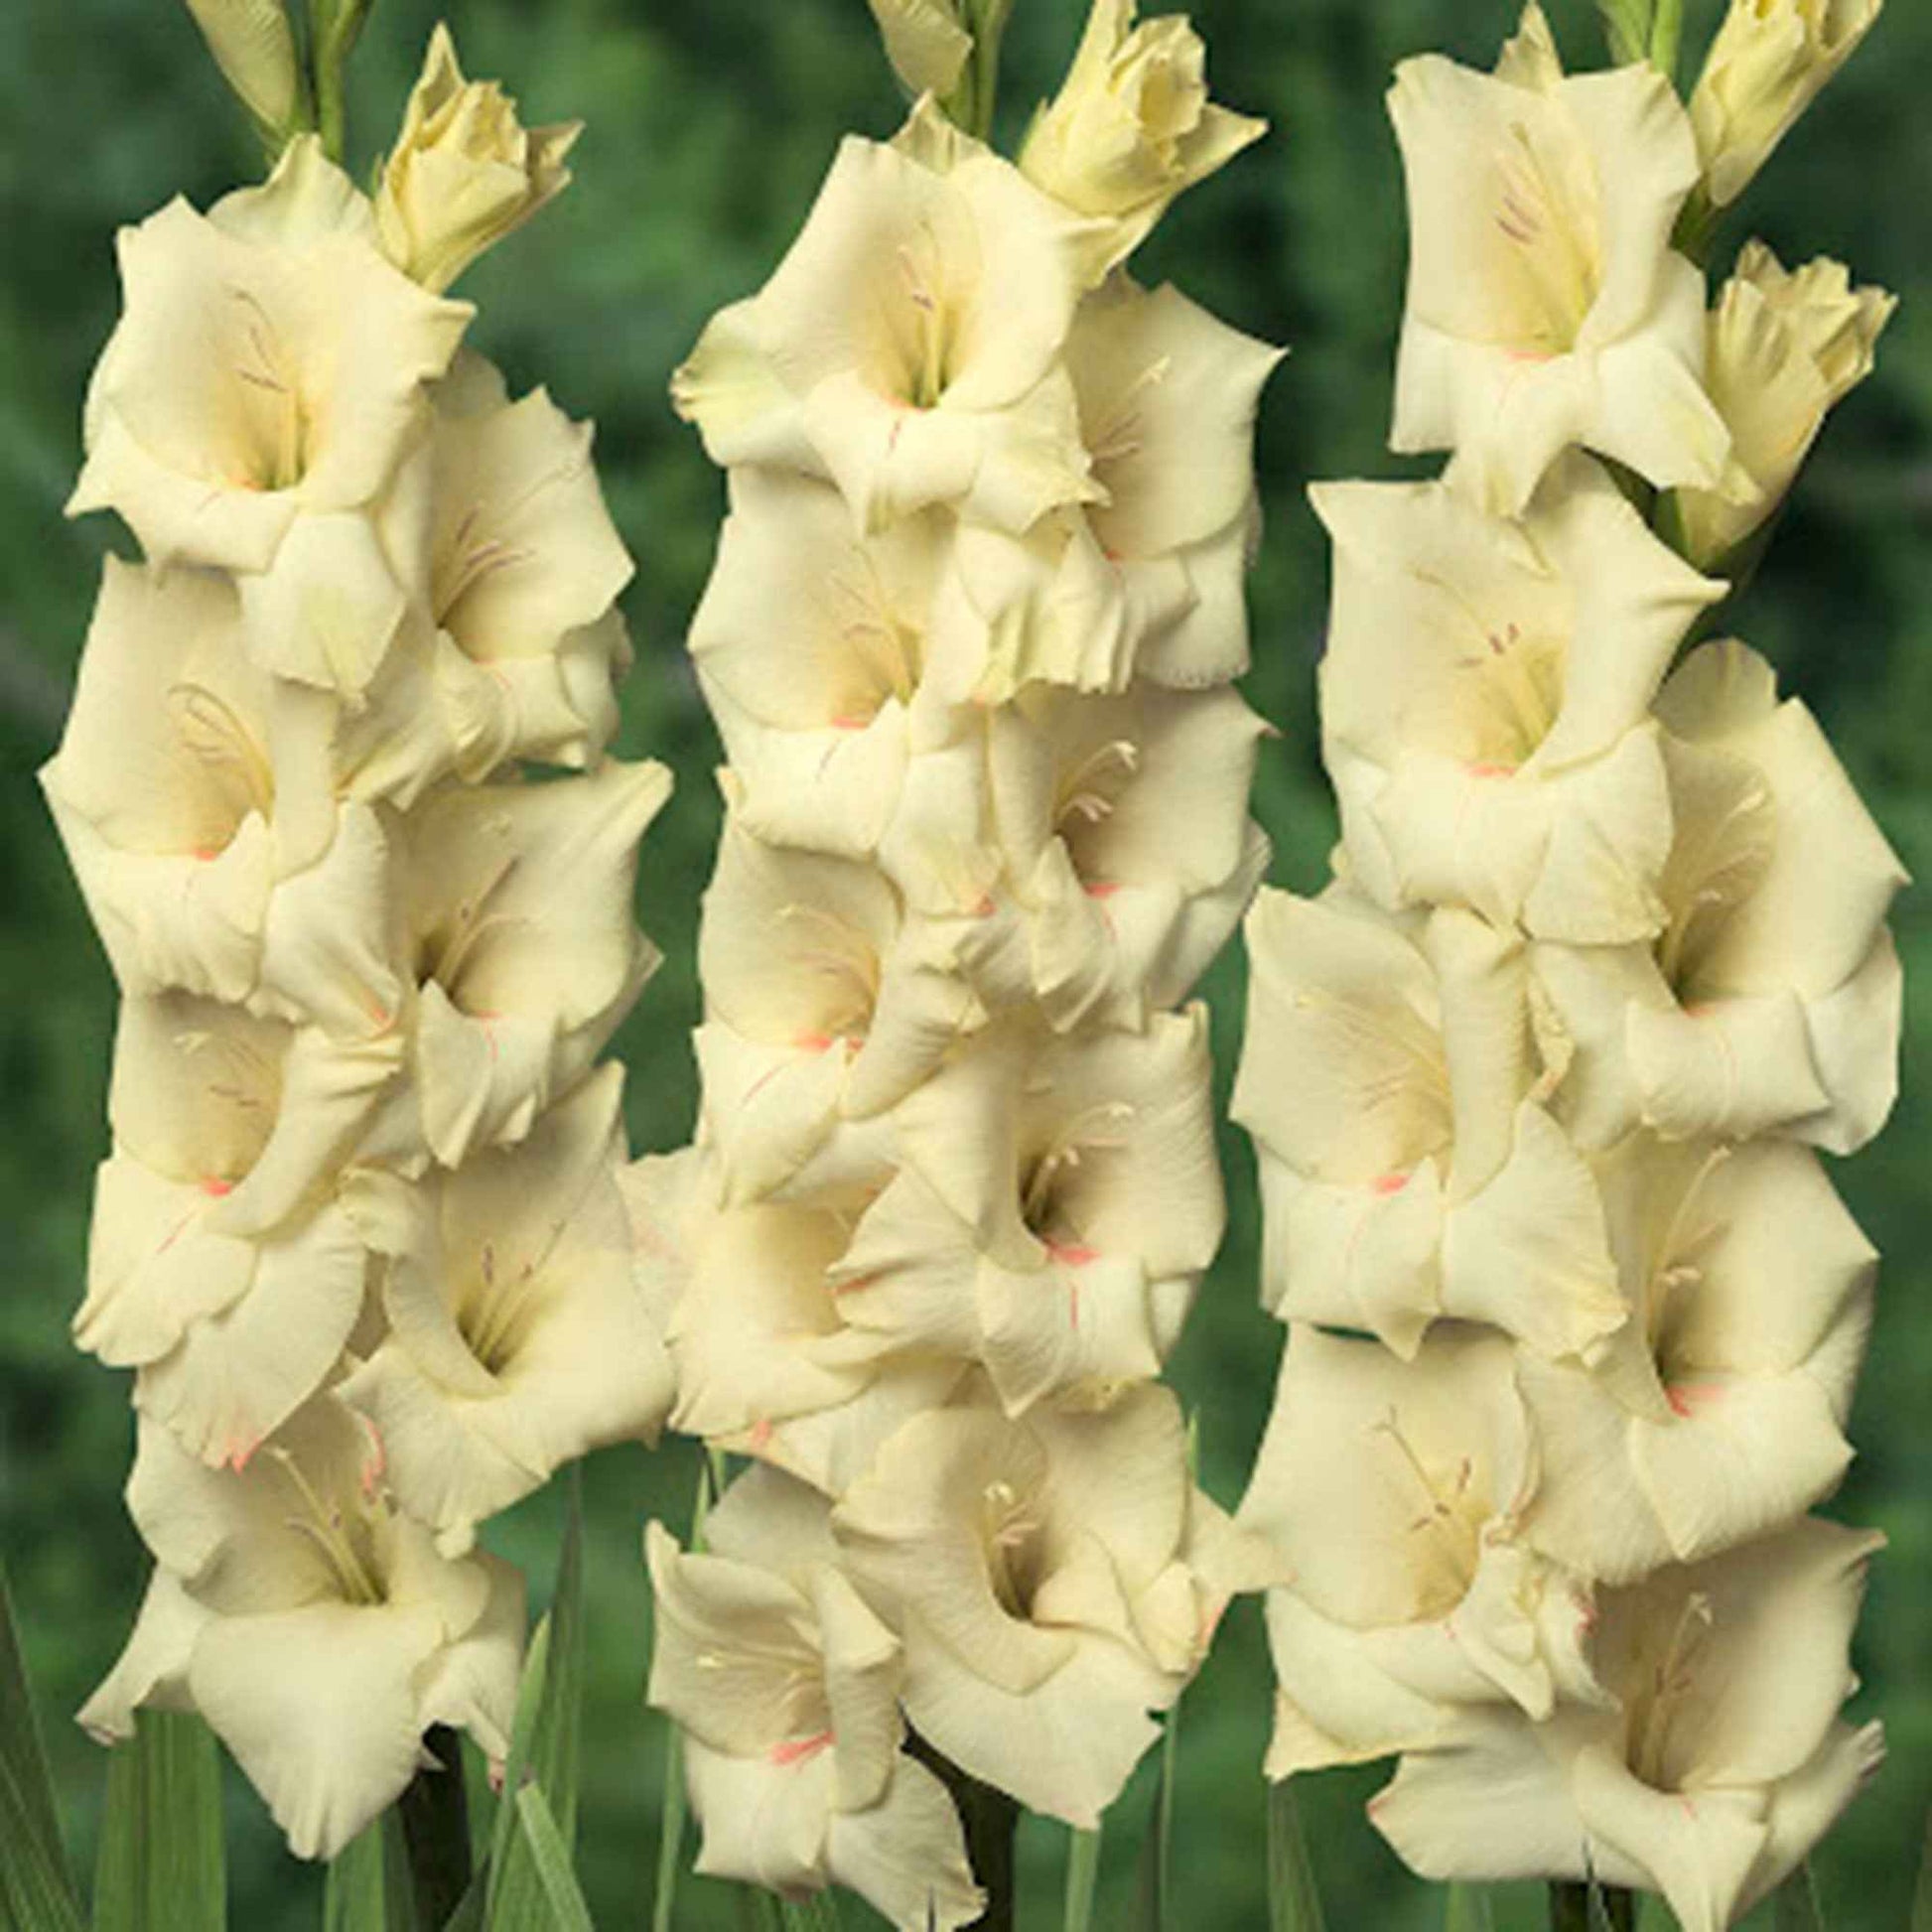 Gladiole Gladiolus - Mischung 'Ruffled Wedding'  Gelb-Lila - Bienen- und schmetterlingsanziehende Blumenzwiebeln